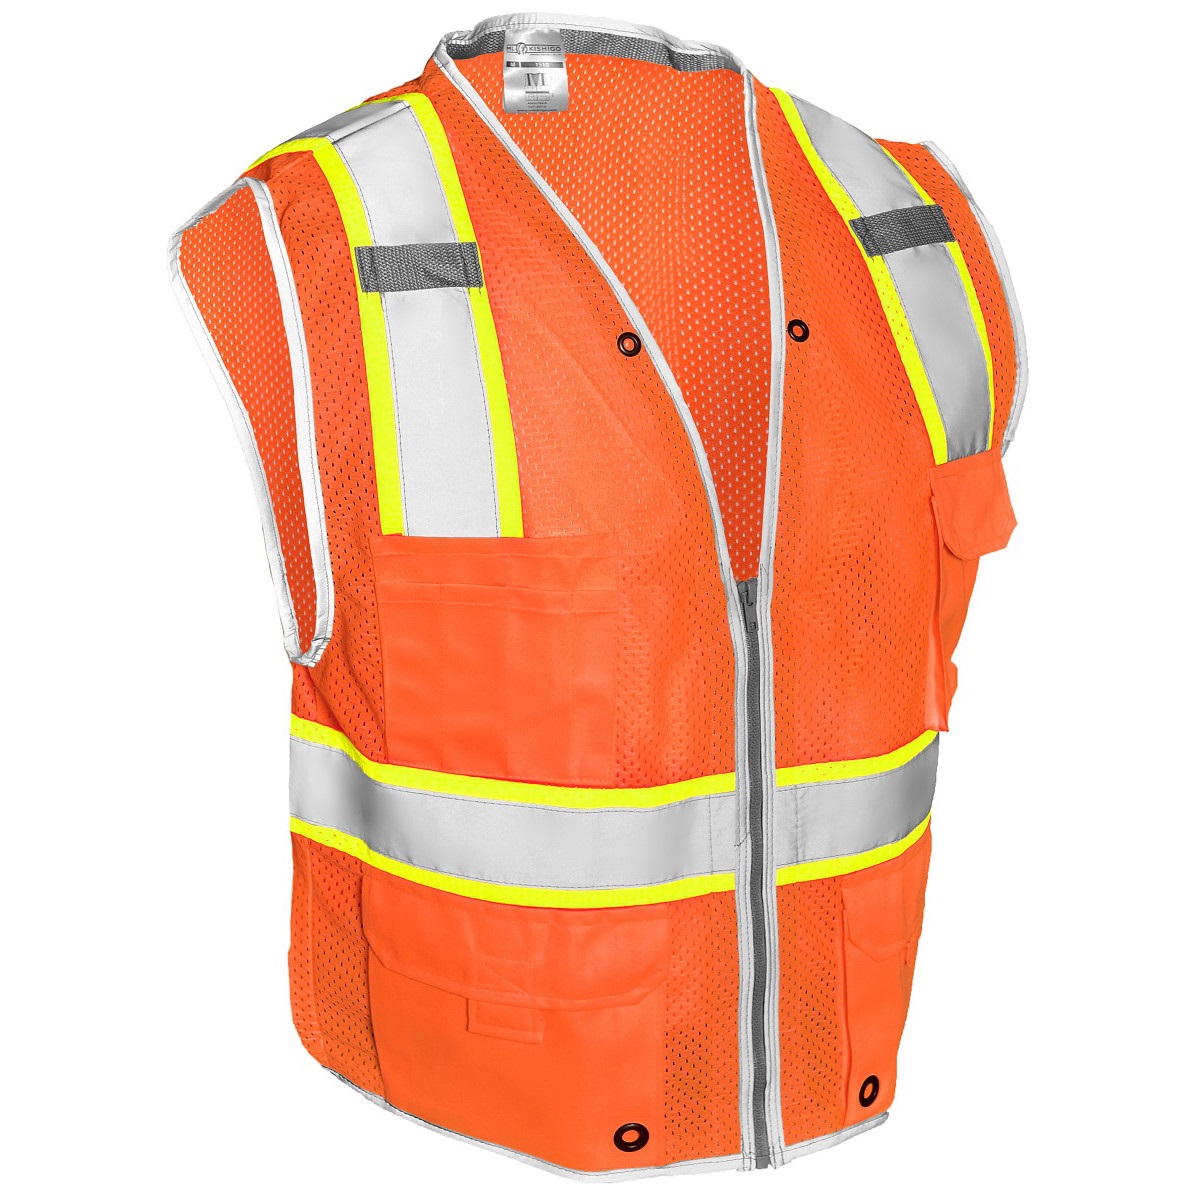 Kishigo 1511 Brilliant Series Heavy Duty Safety Vest Orange Full Source